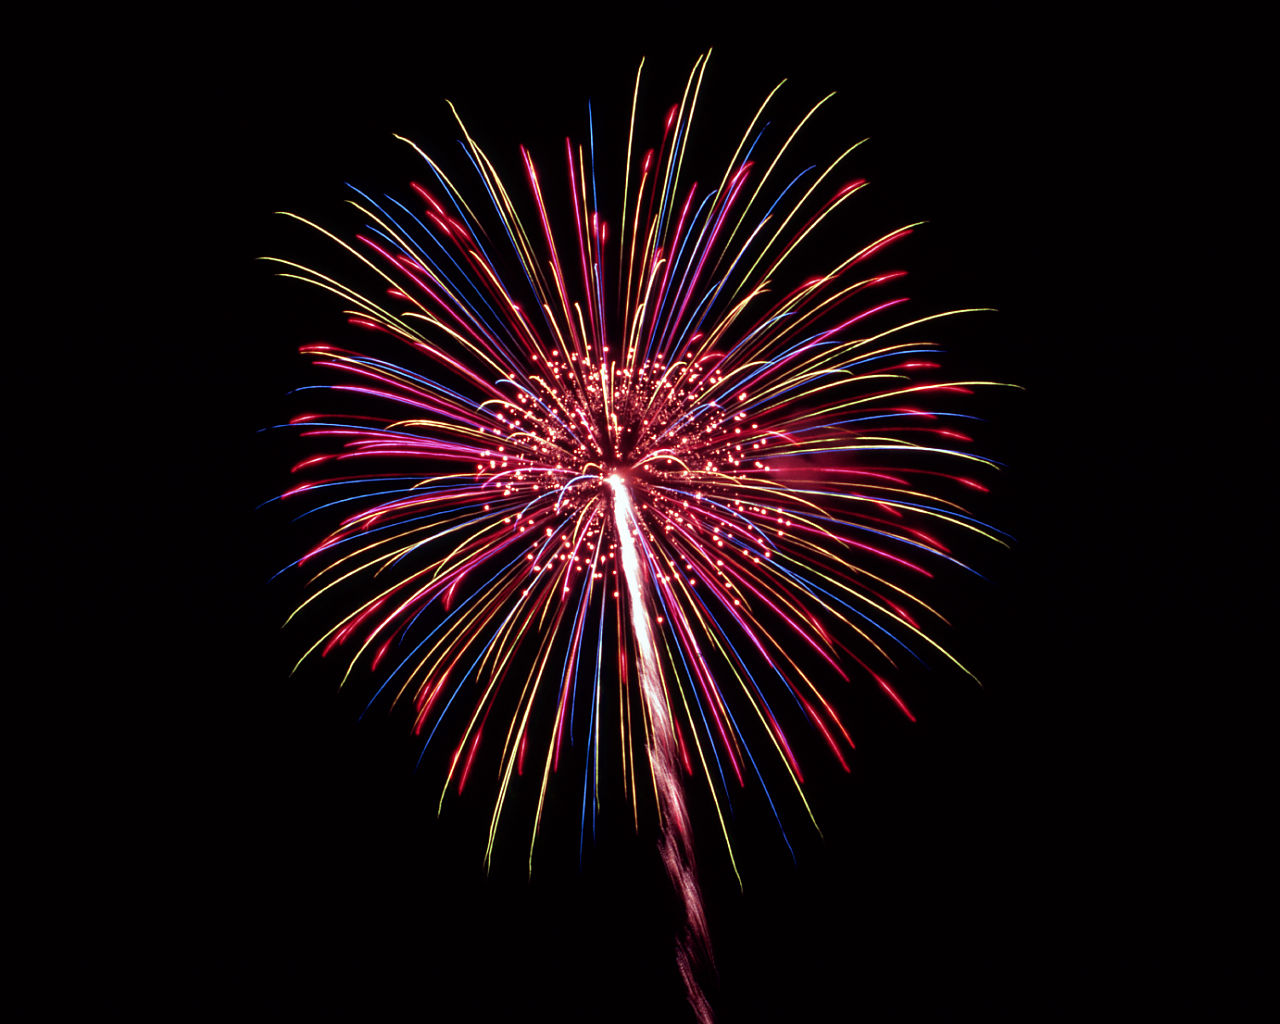 Fireworks #2 - 1280x1024